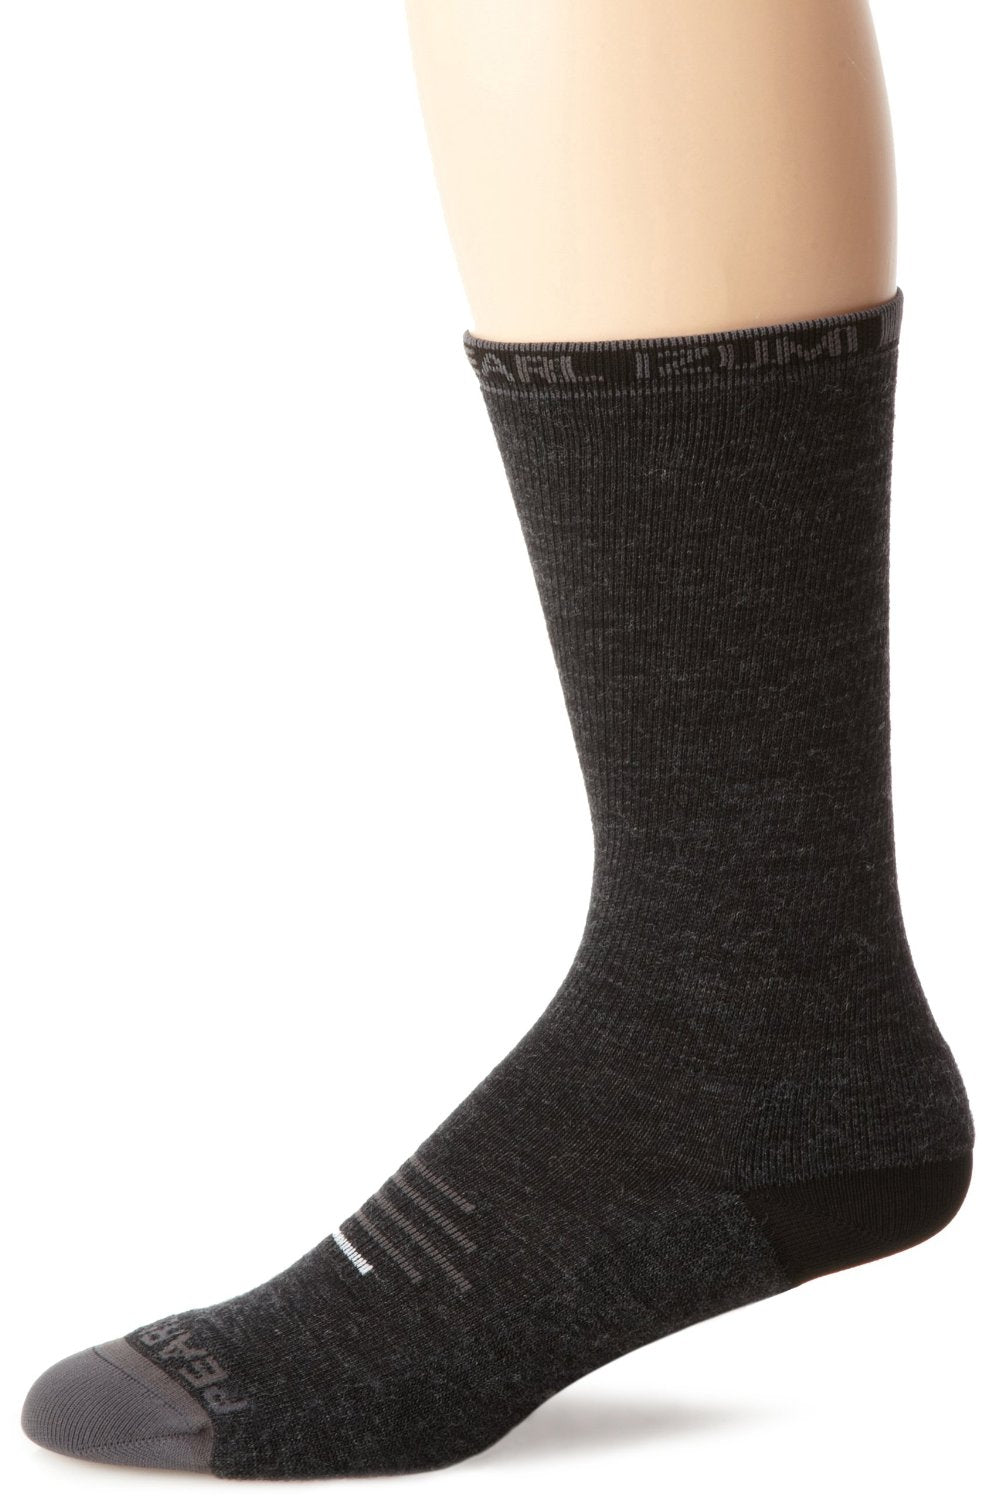 Pearl iZumi Socks Elite Thermal Wool Tall Cuff Cycling Sock Black Small SM Pair